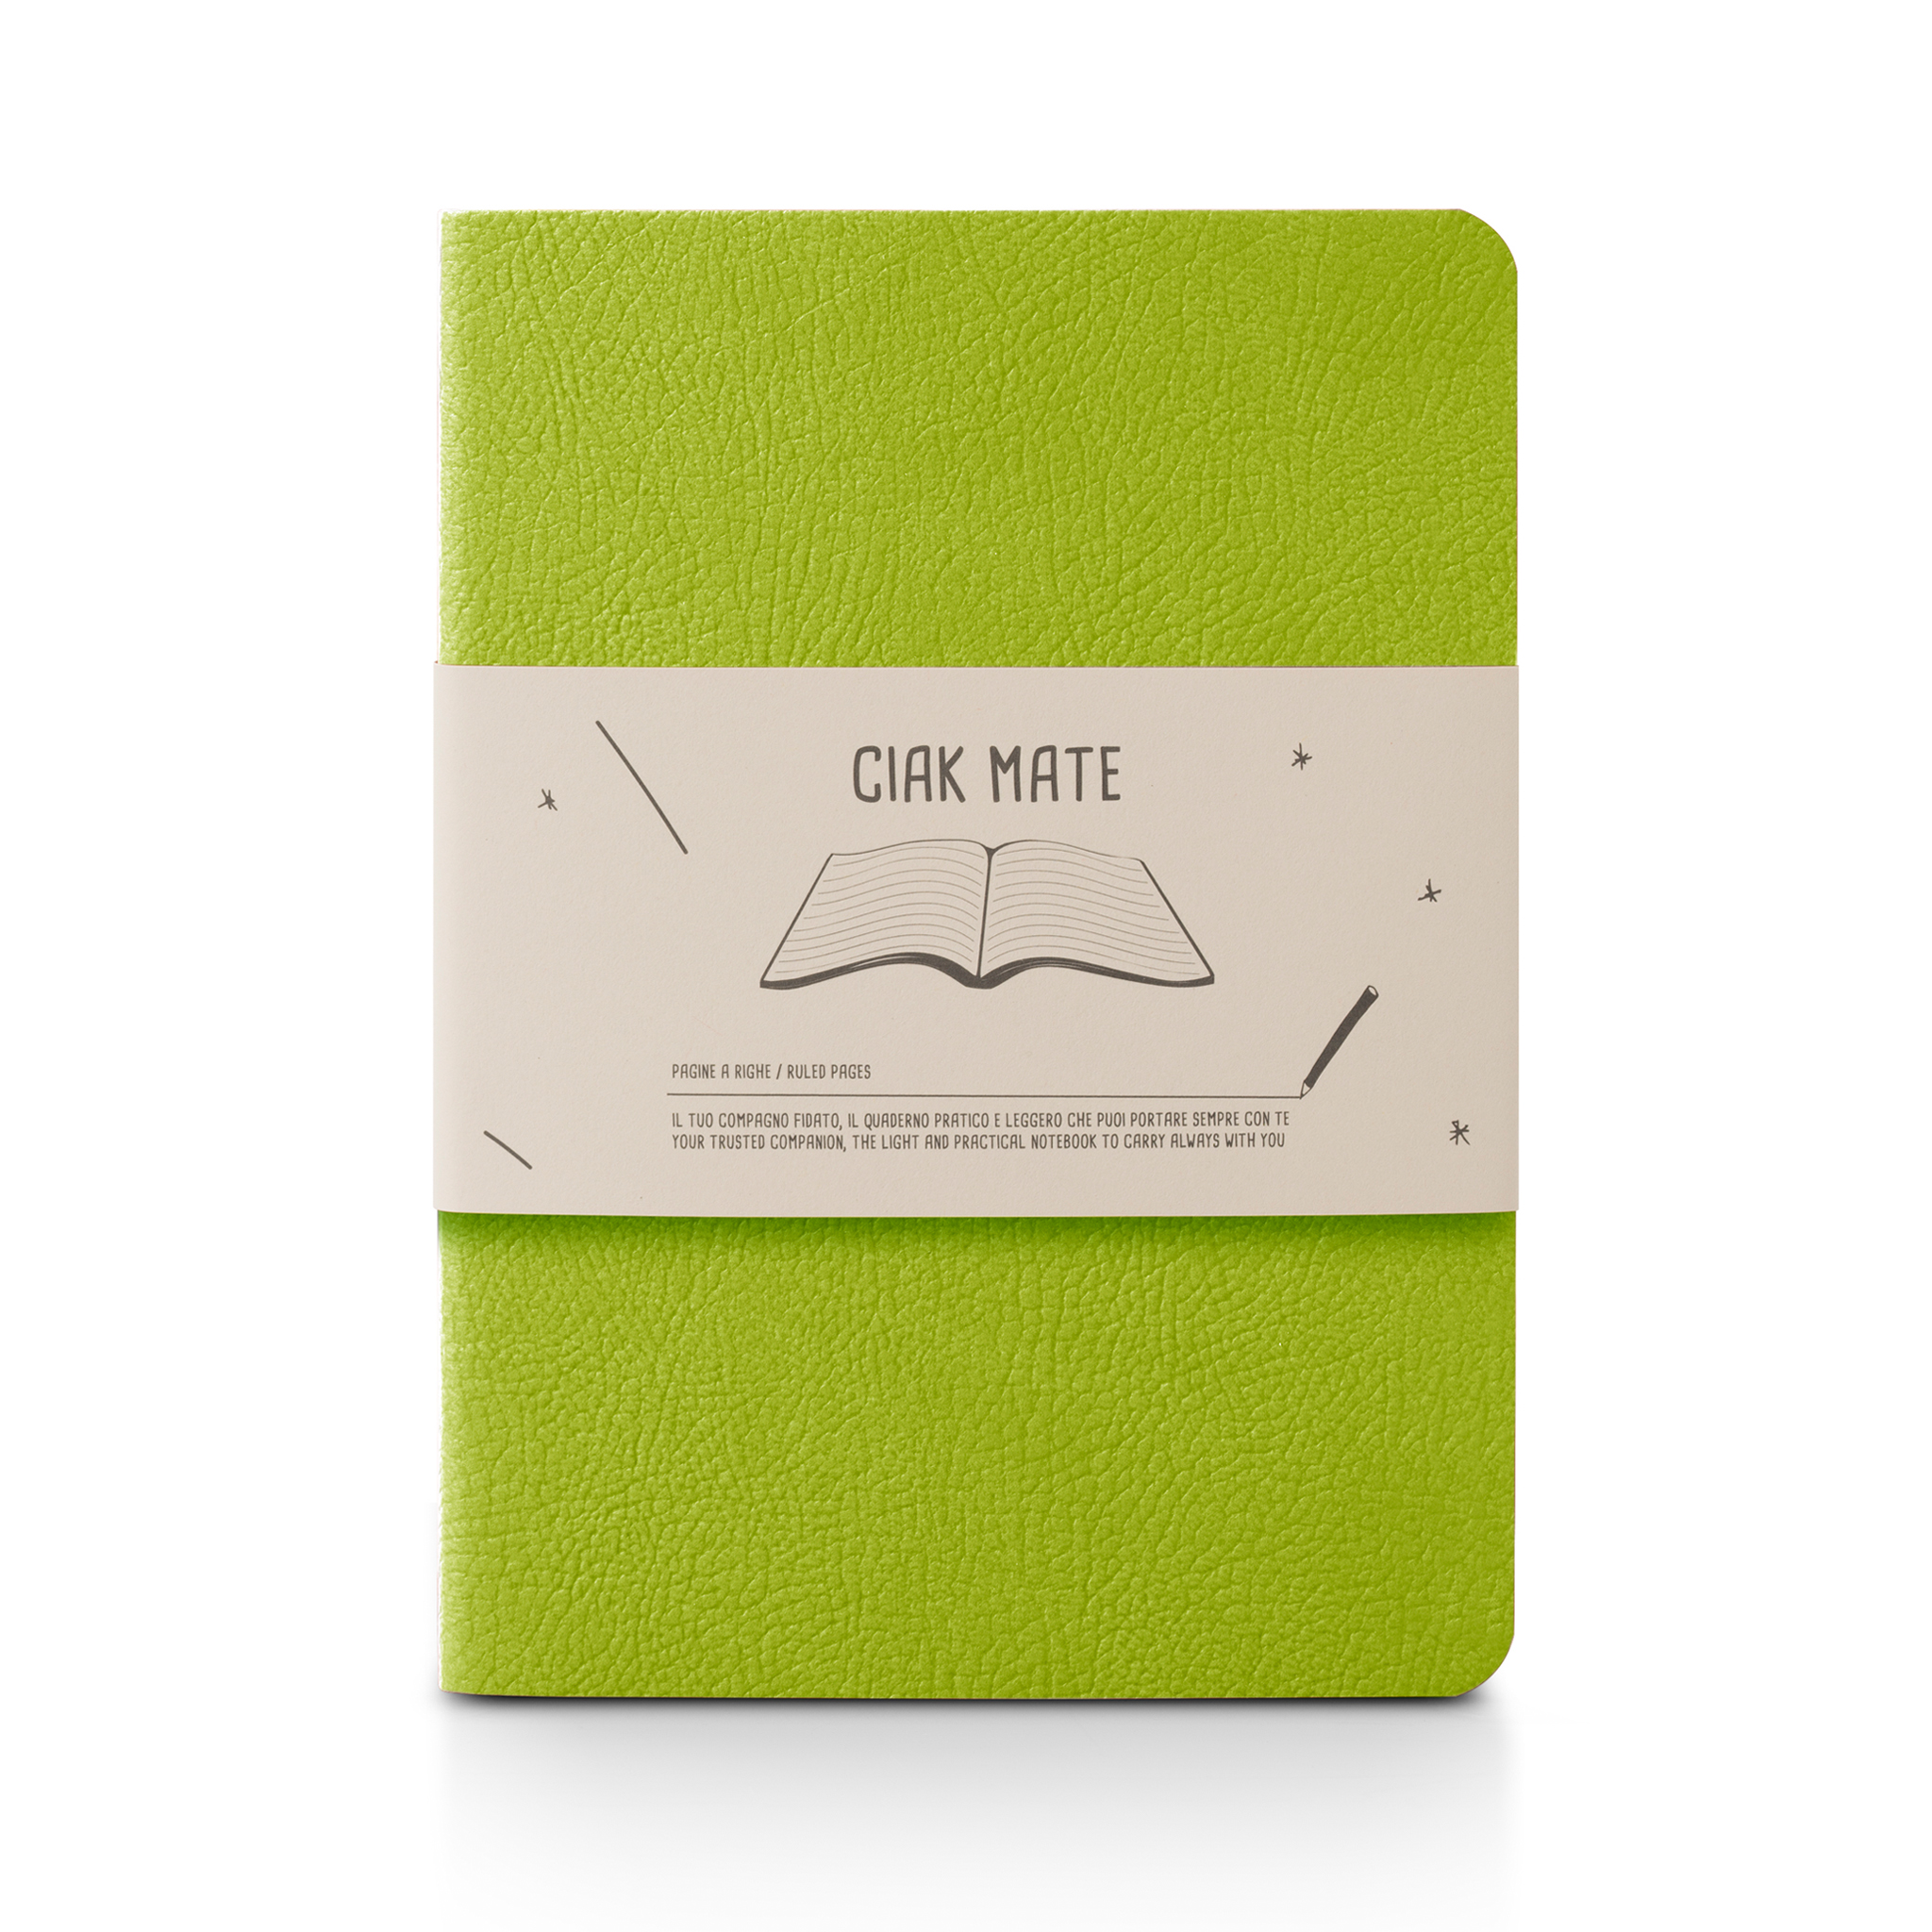 CIAK MATE Soft Cover Slim Notebook